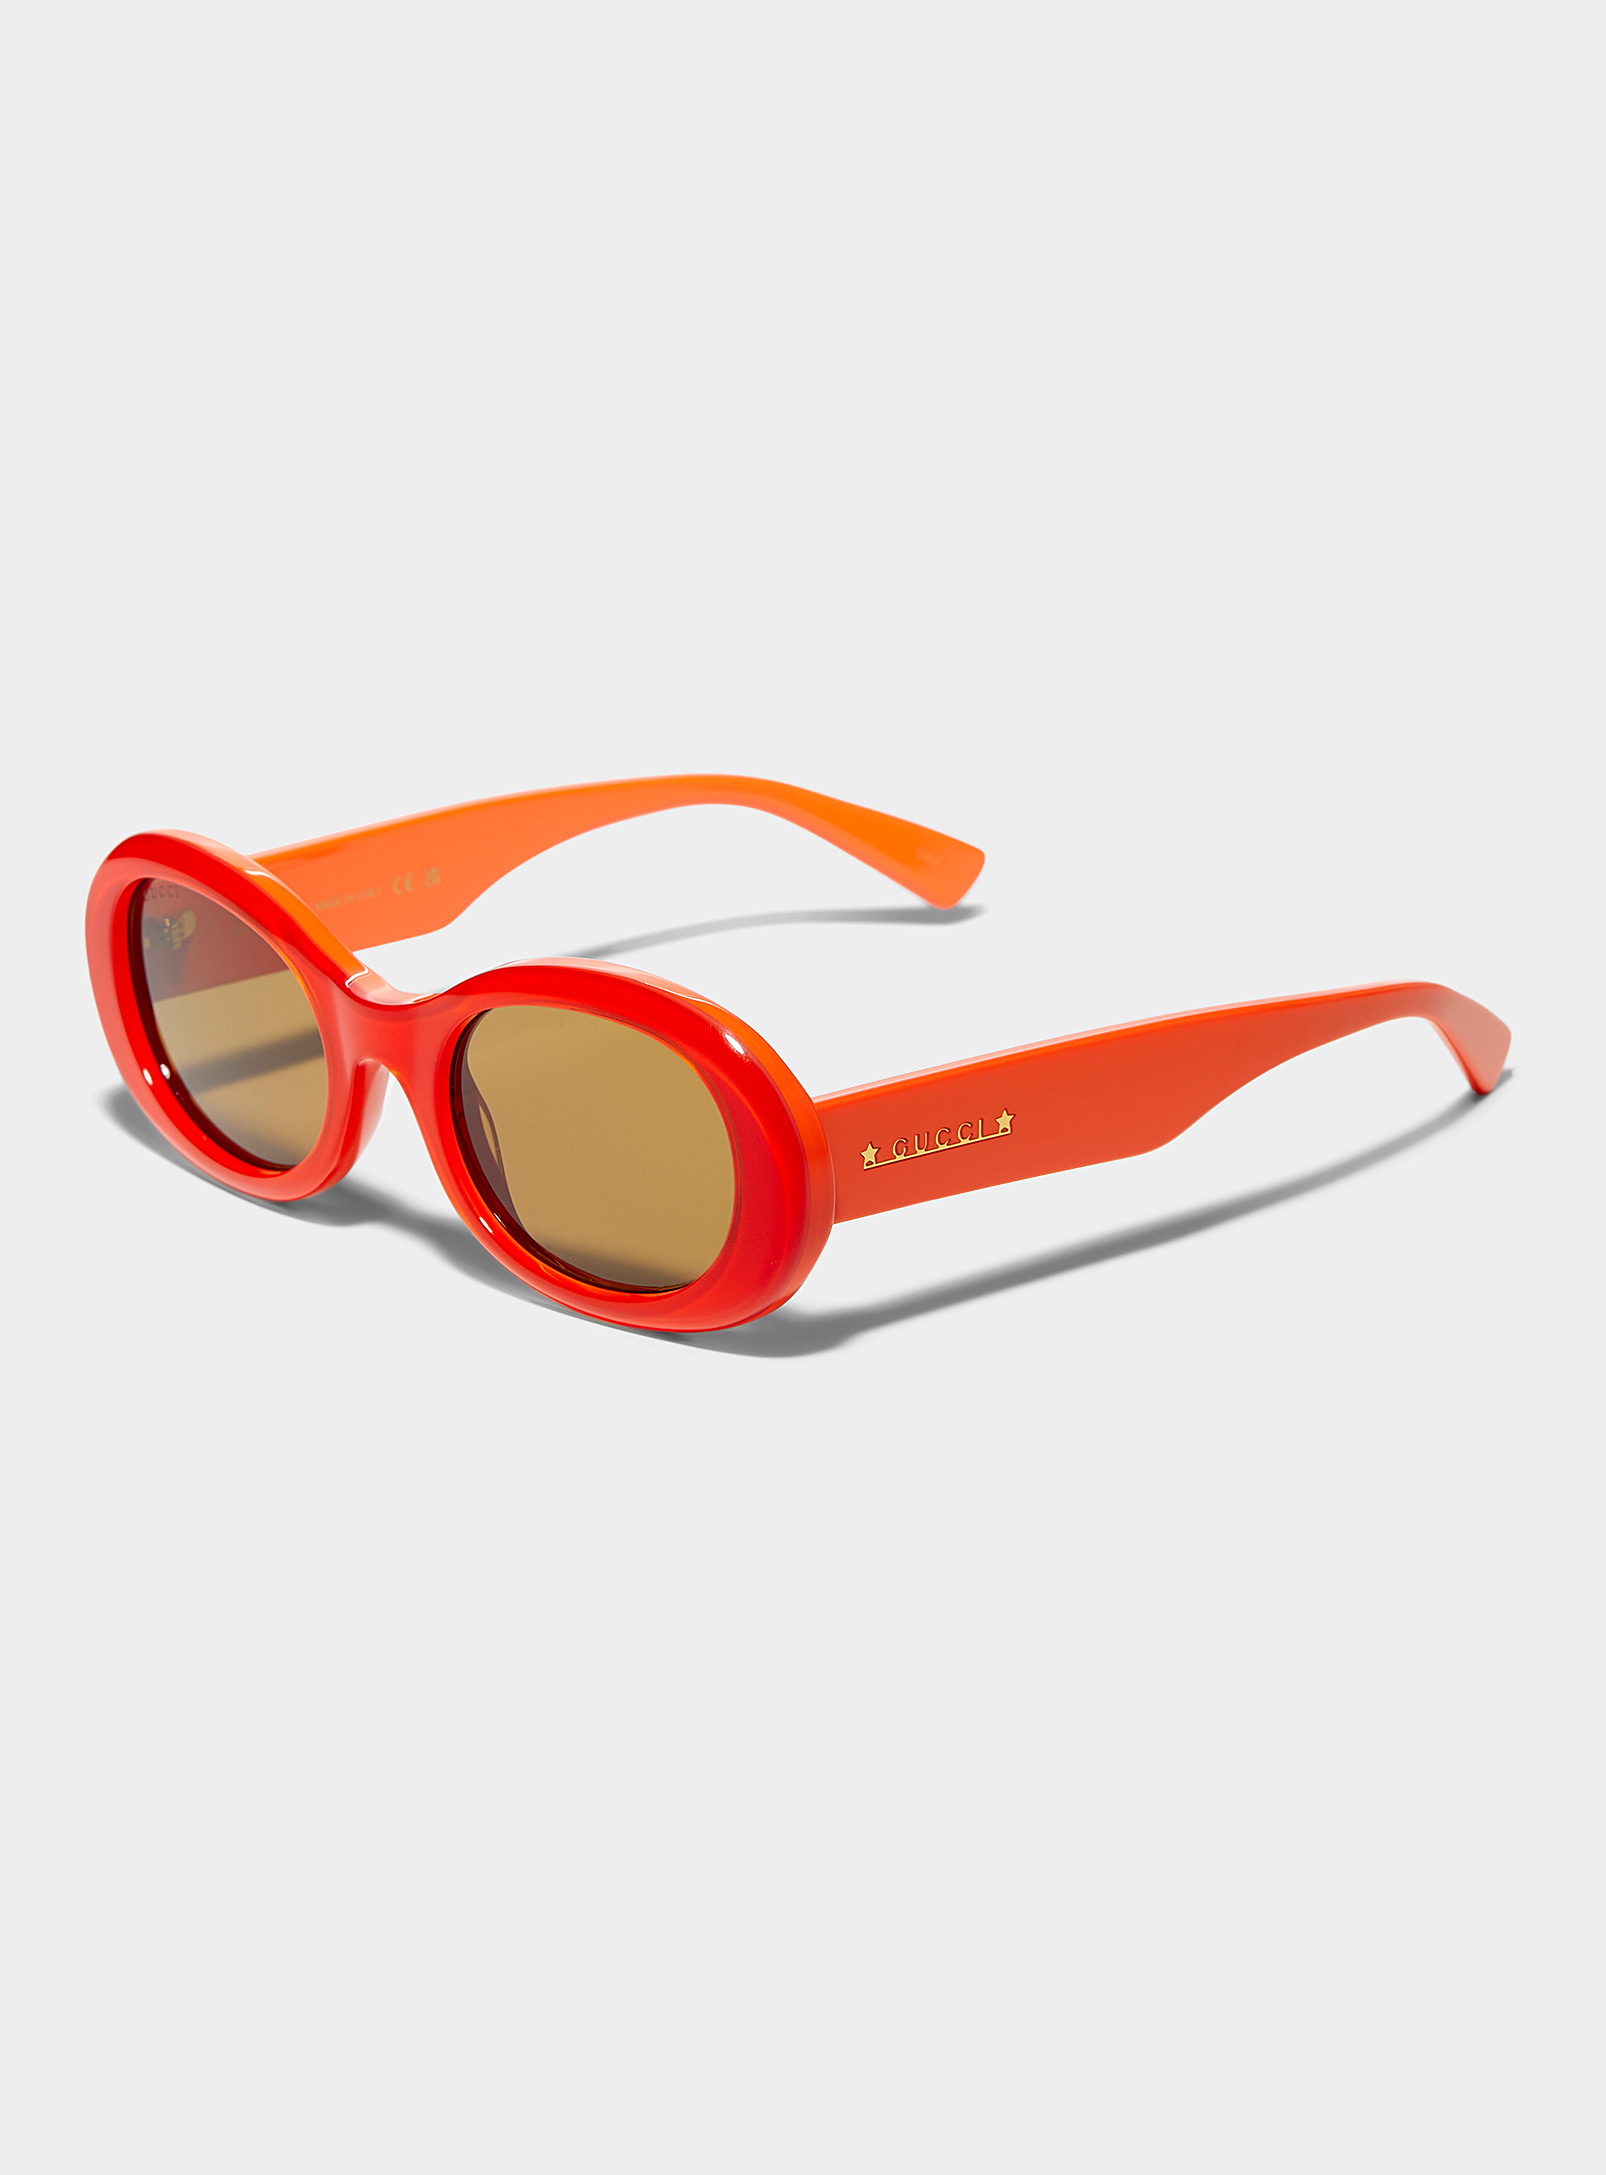 Gucci - Women's Electric orange oval sunglasses